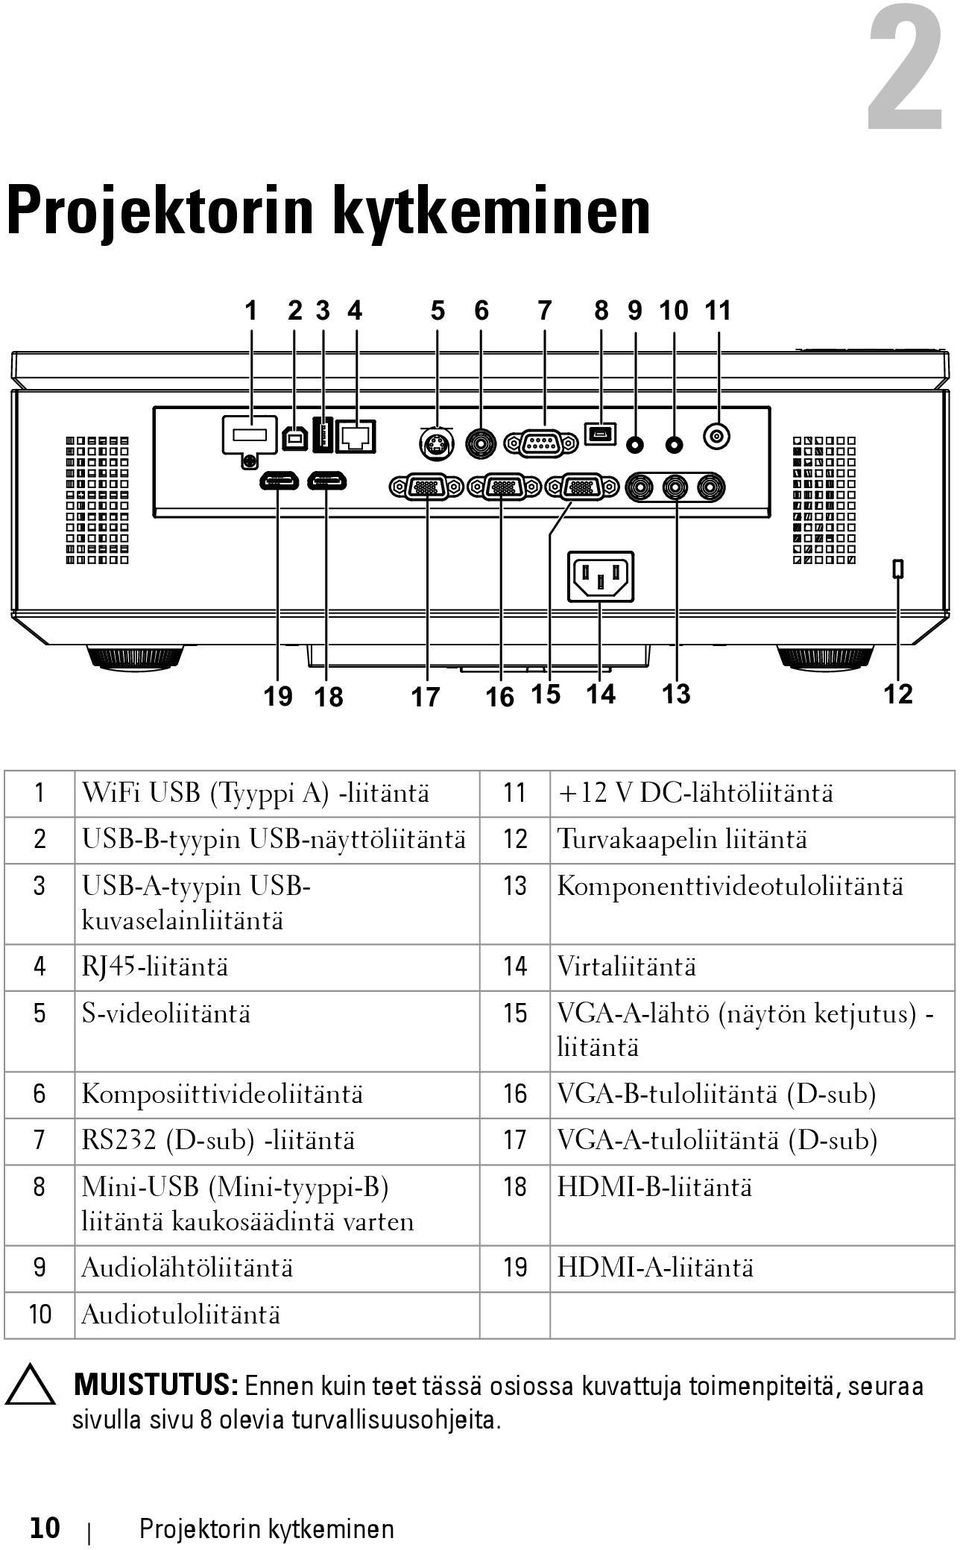 Komposiittivideoliitäntä 16 VGA-B-tuloliitäntä (D-sub) 7 RS232 (D-sub) -liitäntä 17 VGA-A-tuloliitäntä (D-sub) 8 Mini-USB (Mini-tyyppi-B) 18 HDMI-B-liitäntä liitäntä kaukosäädintä varten